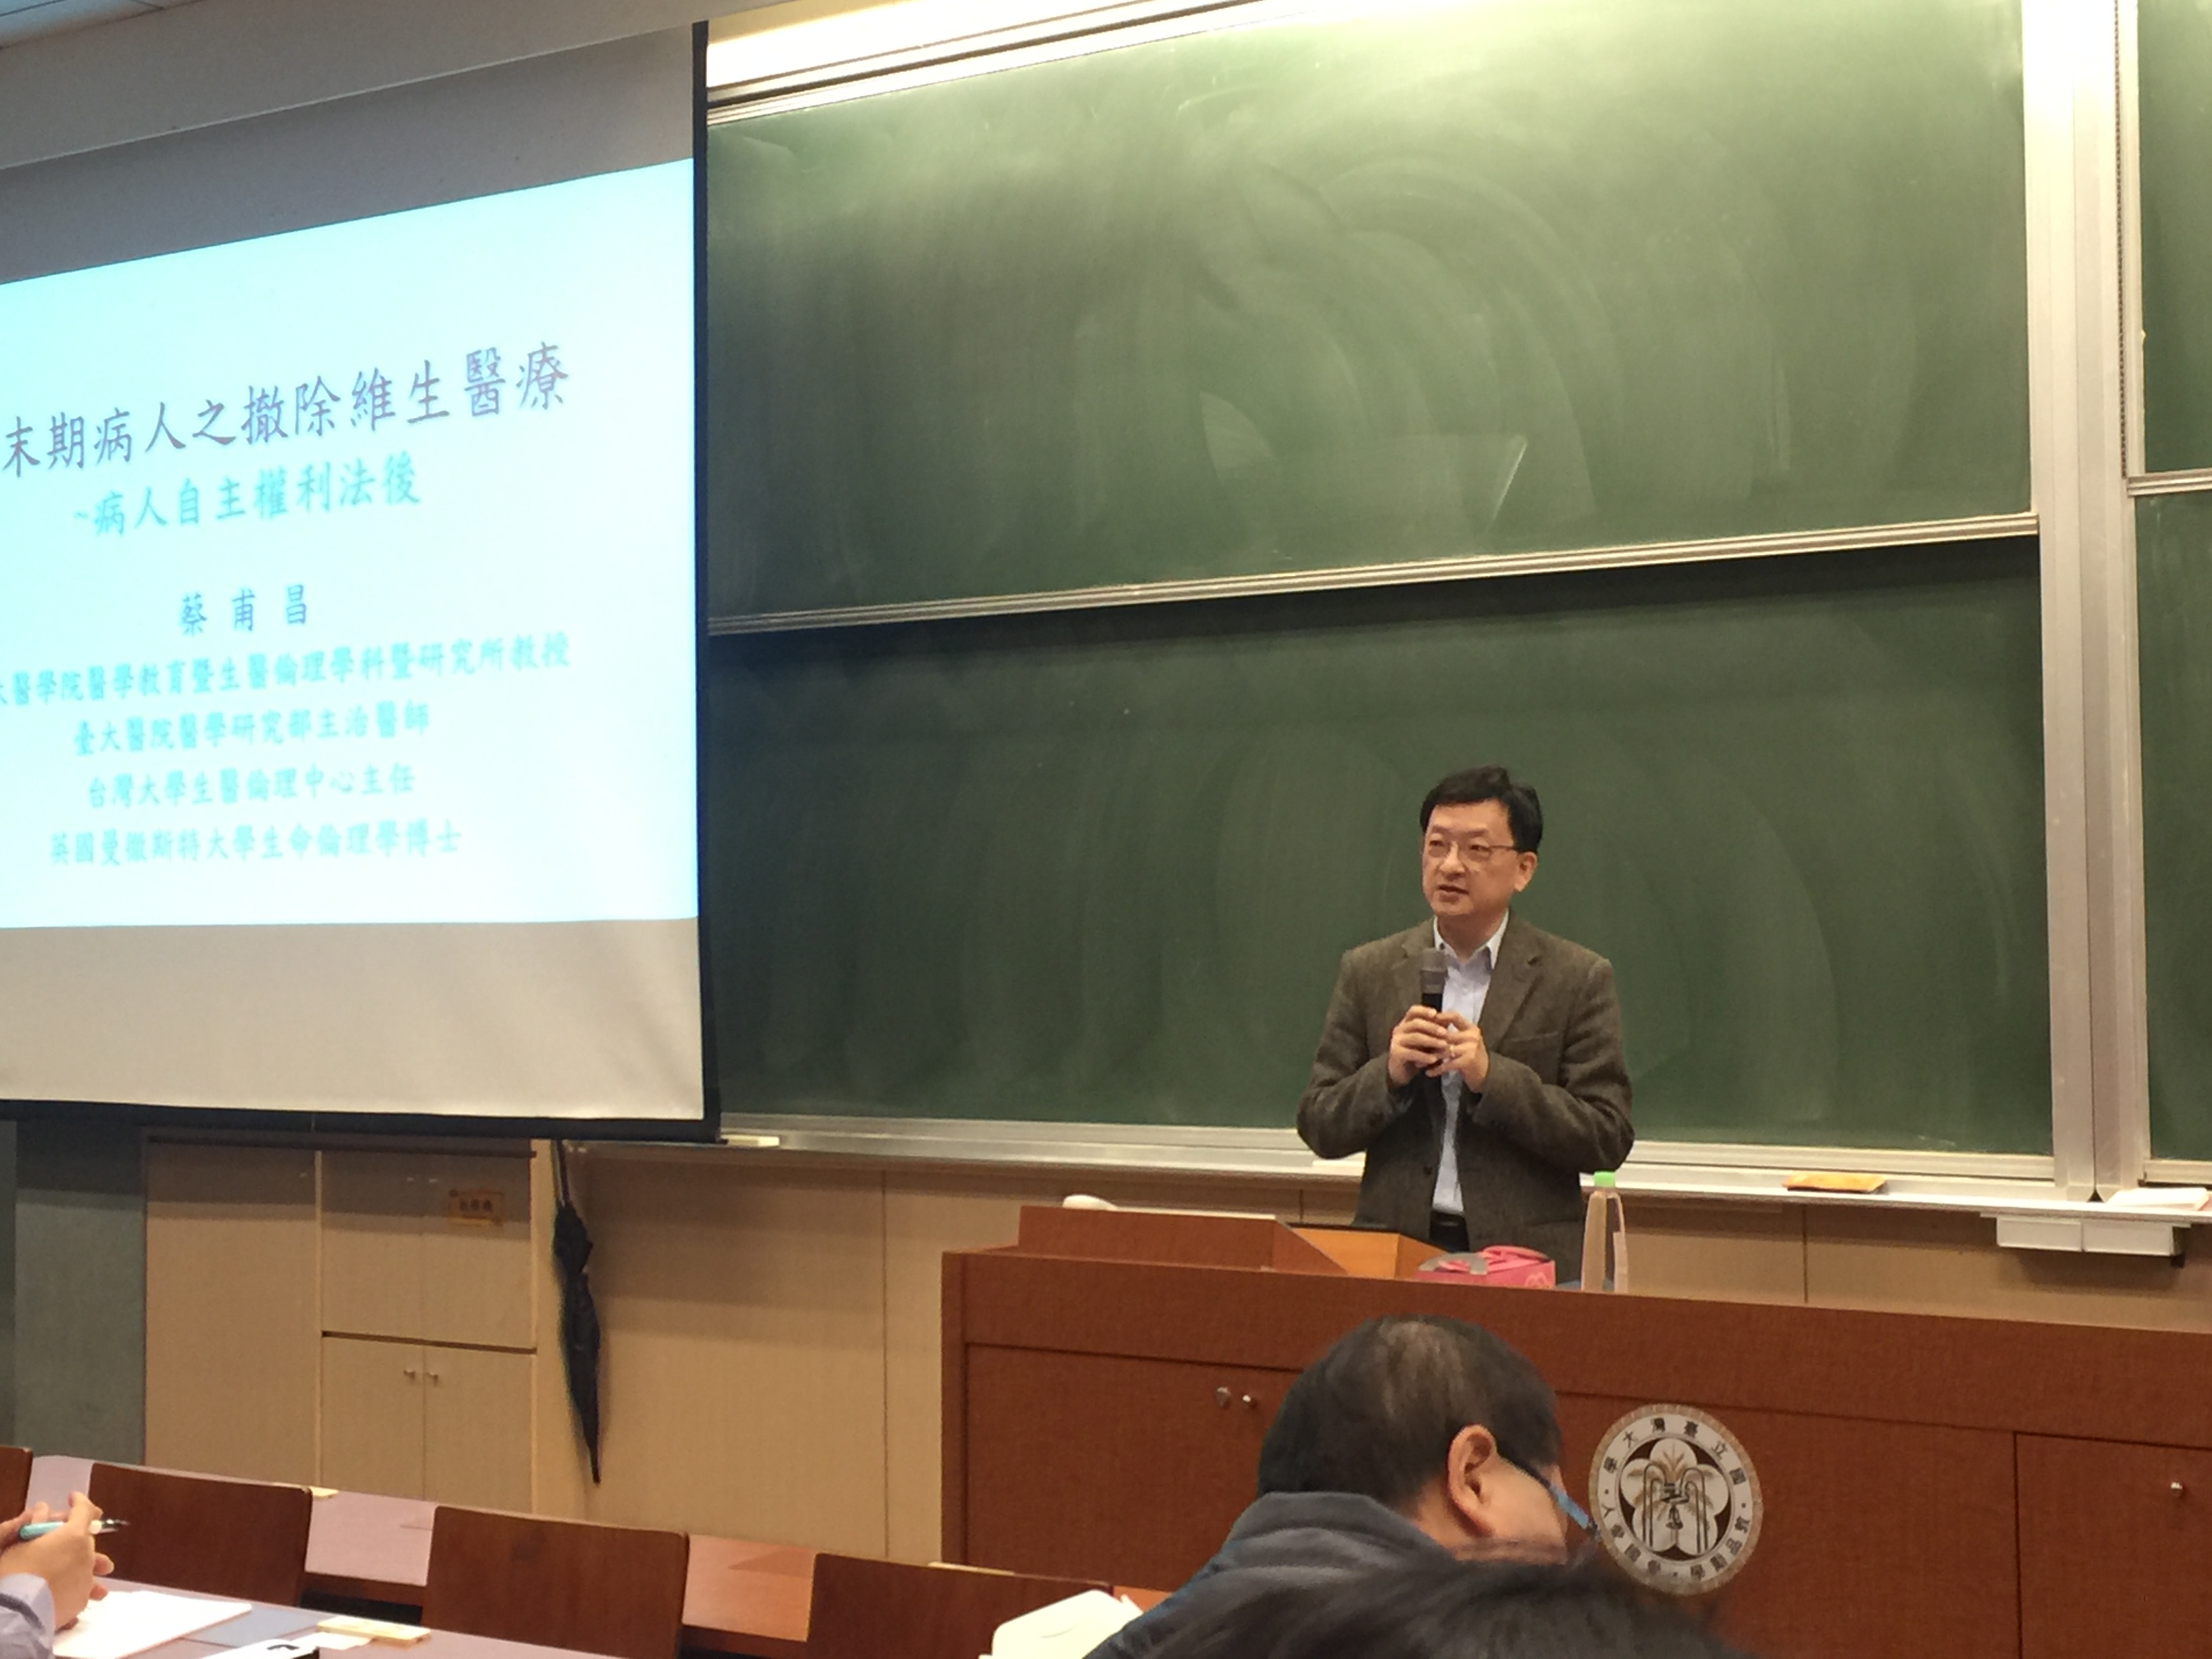 蔡甫昌老師發表「非末期病人之撤除維生醫療~病人自主權利法之後」專題演講